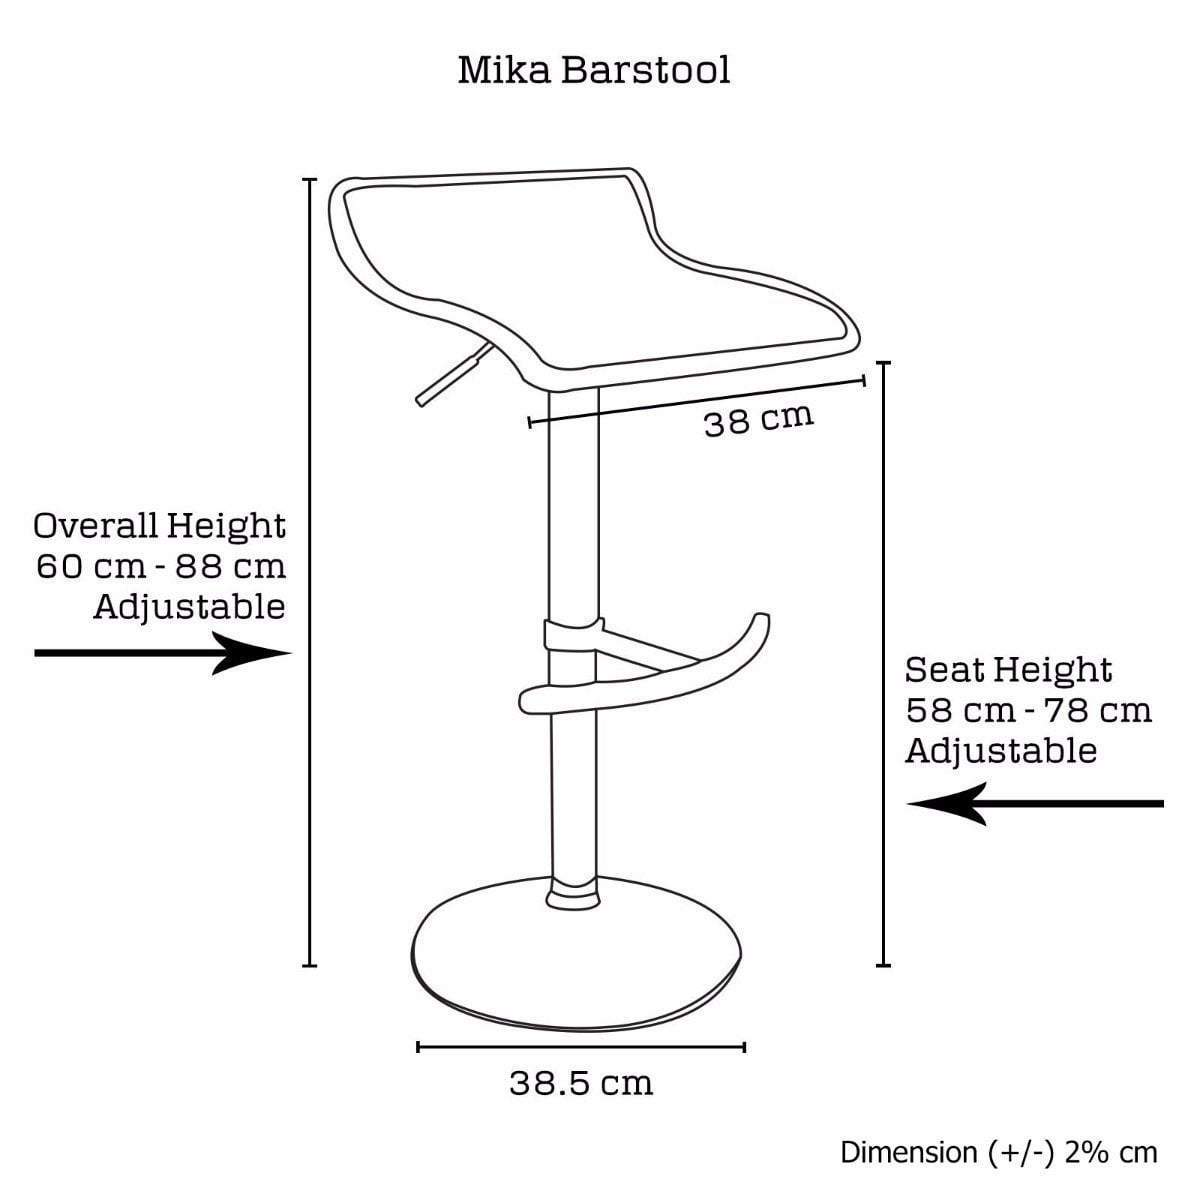 2 X Mika Barstool - BSR